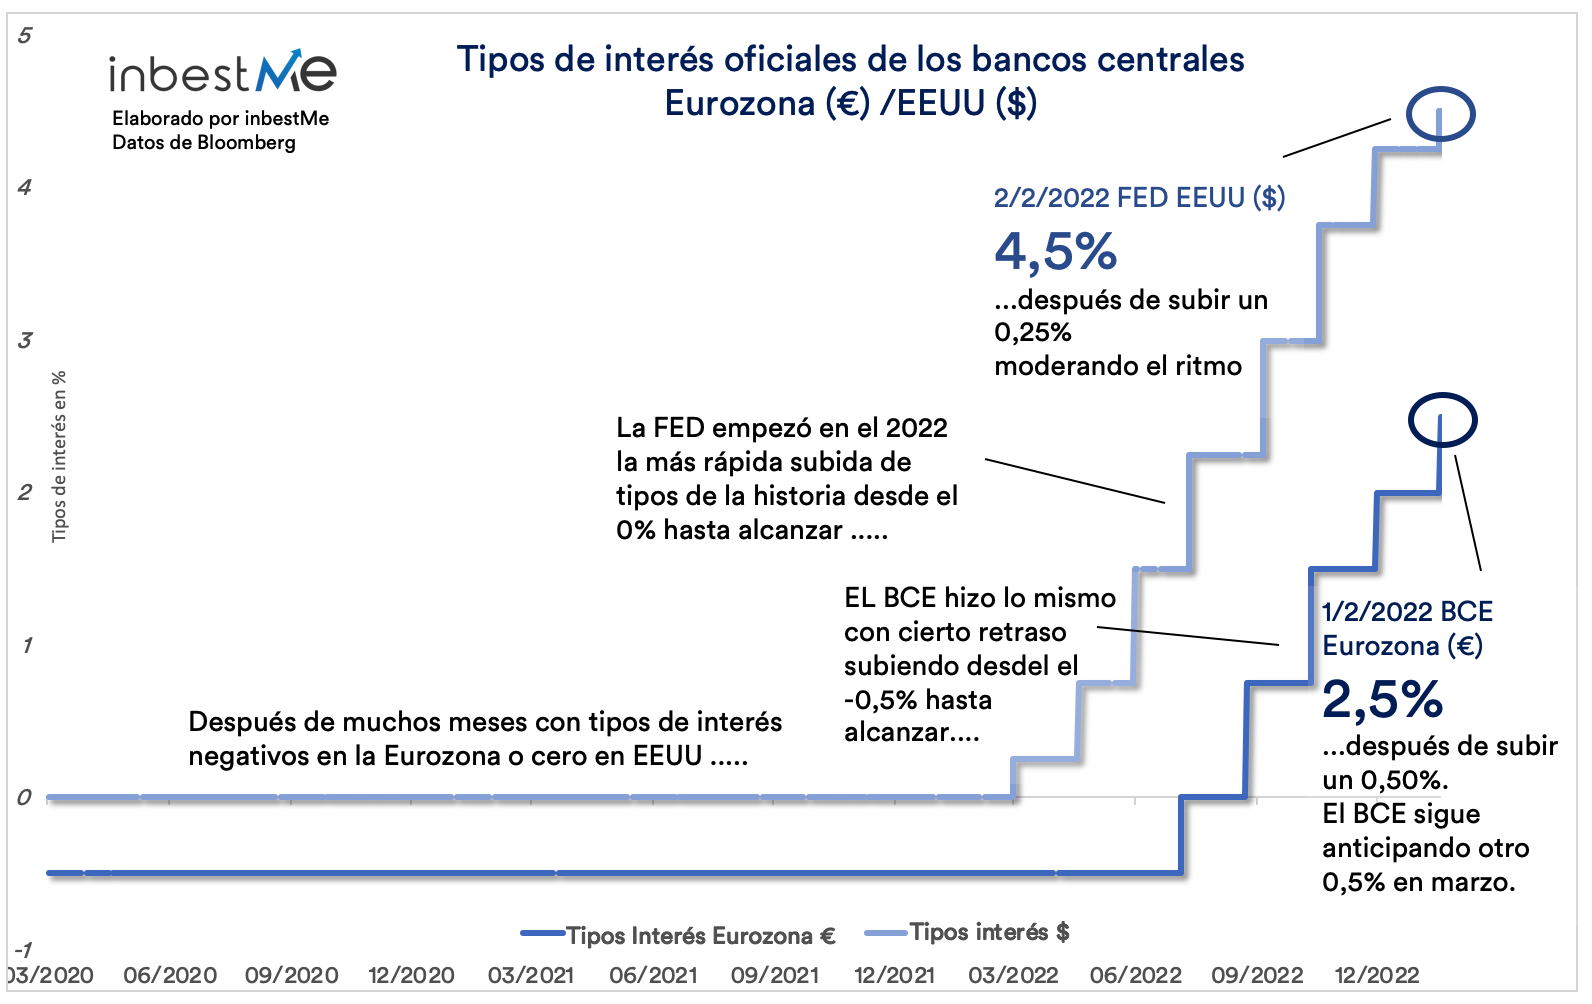 Tipos de interés oficiales de los bancos centrales Eurozona / EEUU